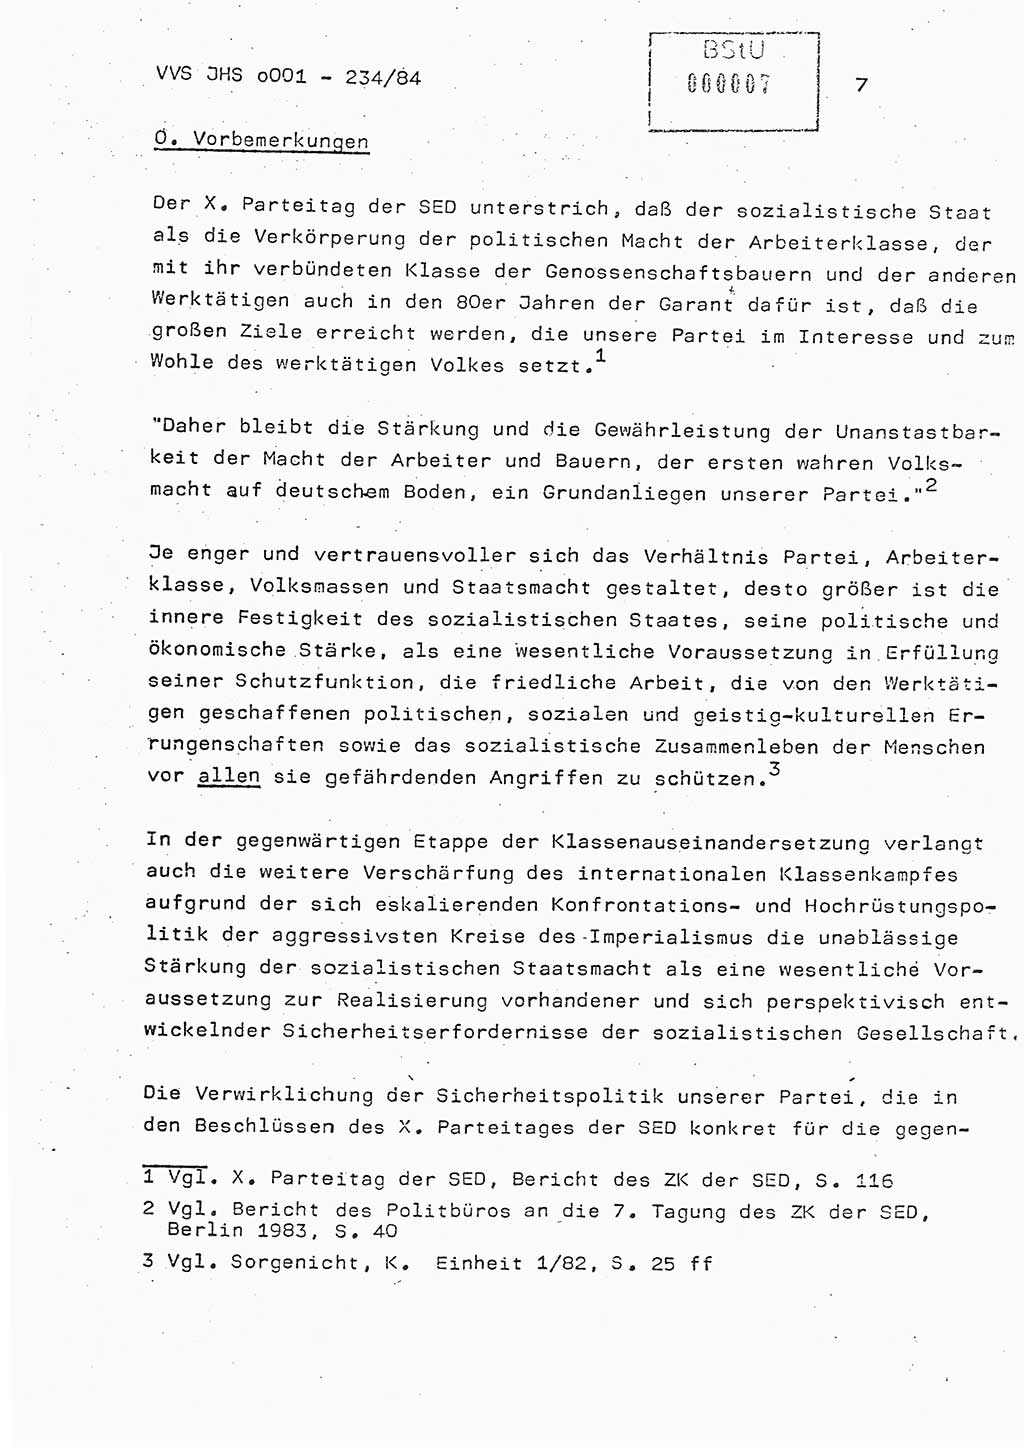 Dissertation Oberst Siegfried Rataizick (Abt. ⅩⅣ), Oberstleutnant Volkmar Heinz (Abt. ⅩⅣ), Oberstleutnant Werner Stein (HA Ⅸ), Hauptmann Heinz Conrad (JHS), Ministerium für Staatssicherheit (MfS) [Deutsche Demokratische Republik (DDR)], Juristische Hochschule (JHS), Vertrauliche Verschlußsache (VVS) o001-234/84, Potsdam 1984, Seite 7 (Diss. MfS DDR JHS VVS o001-234/84 1984, S. 7)